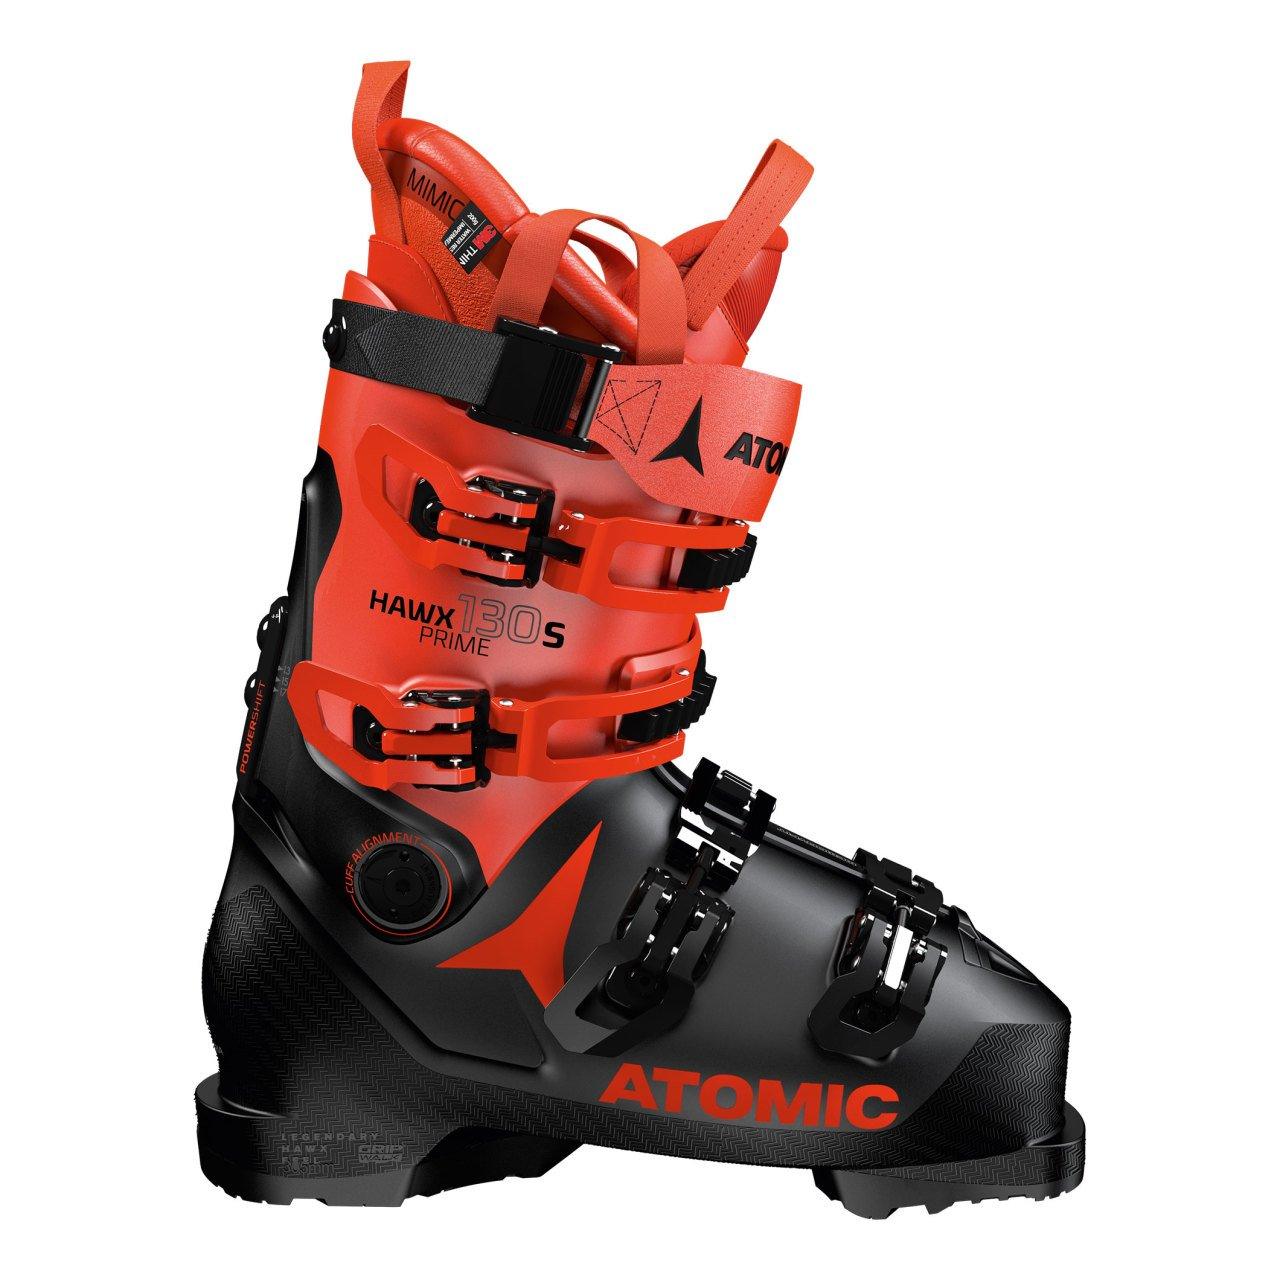 Kayak Botu / Hawx Prime 130 S / Siyah - Kırmızı - Bonherre